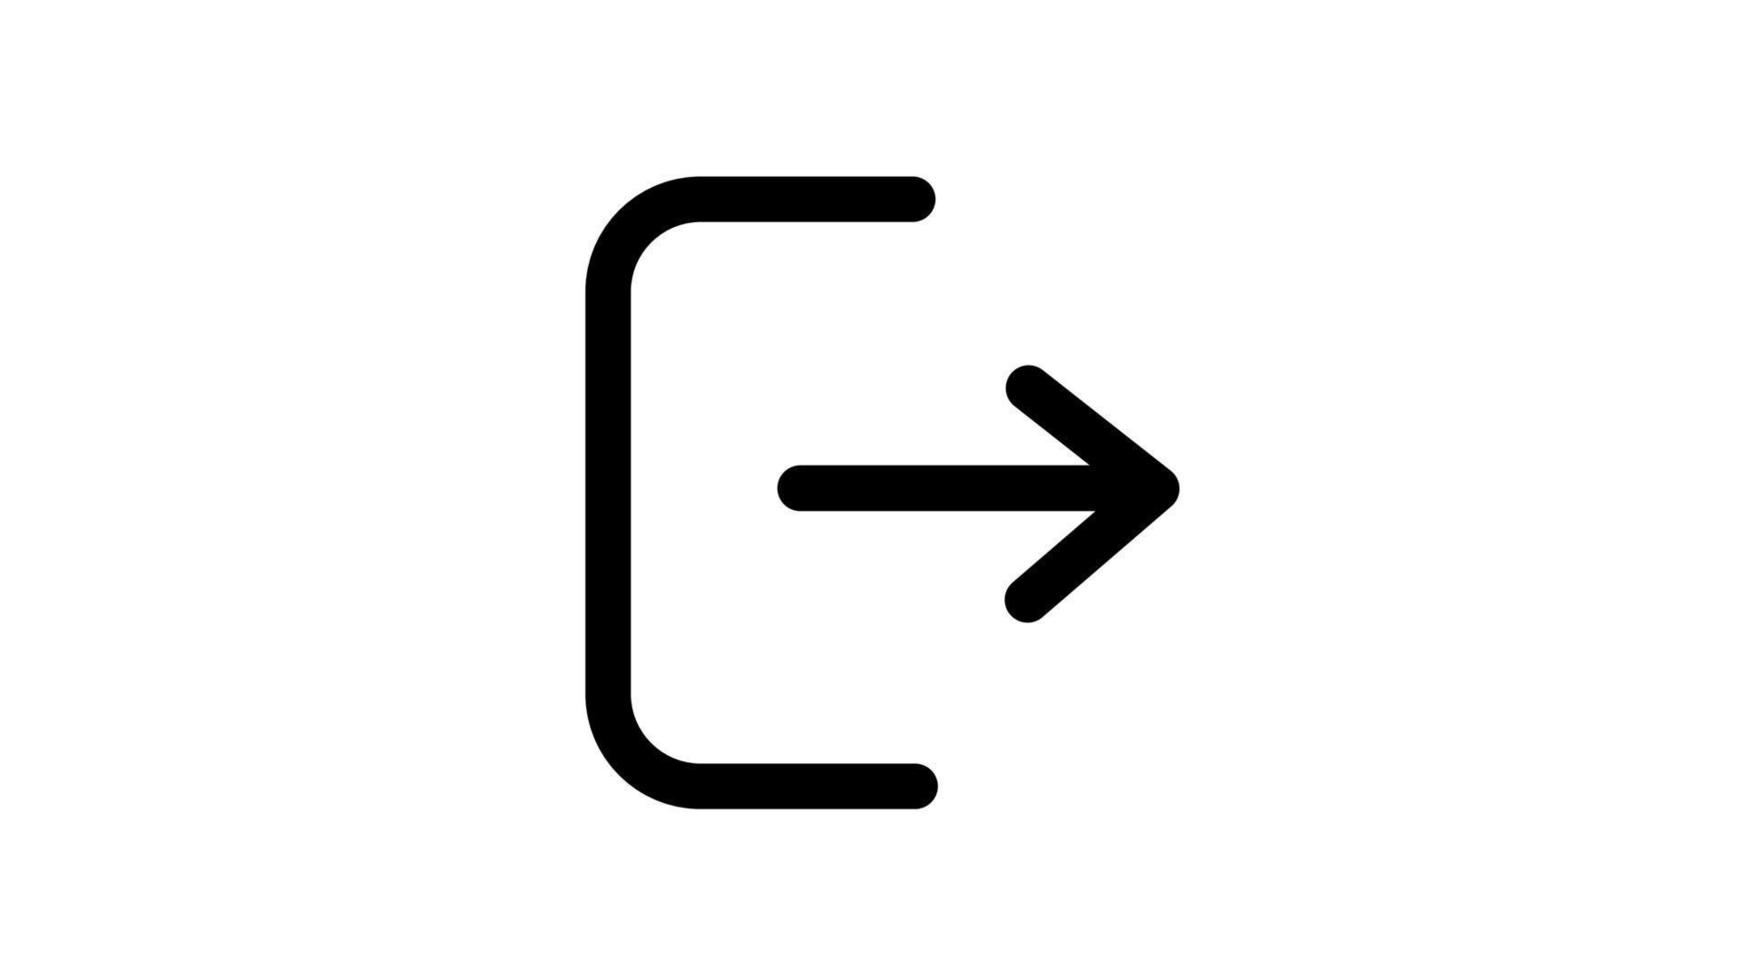 ícone de vetor de logout. vetor de saída em estilo moderno simples. ícone móvel da web plana, sinal, símbolo, botão, elemento - ilustração vetorial.